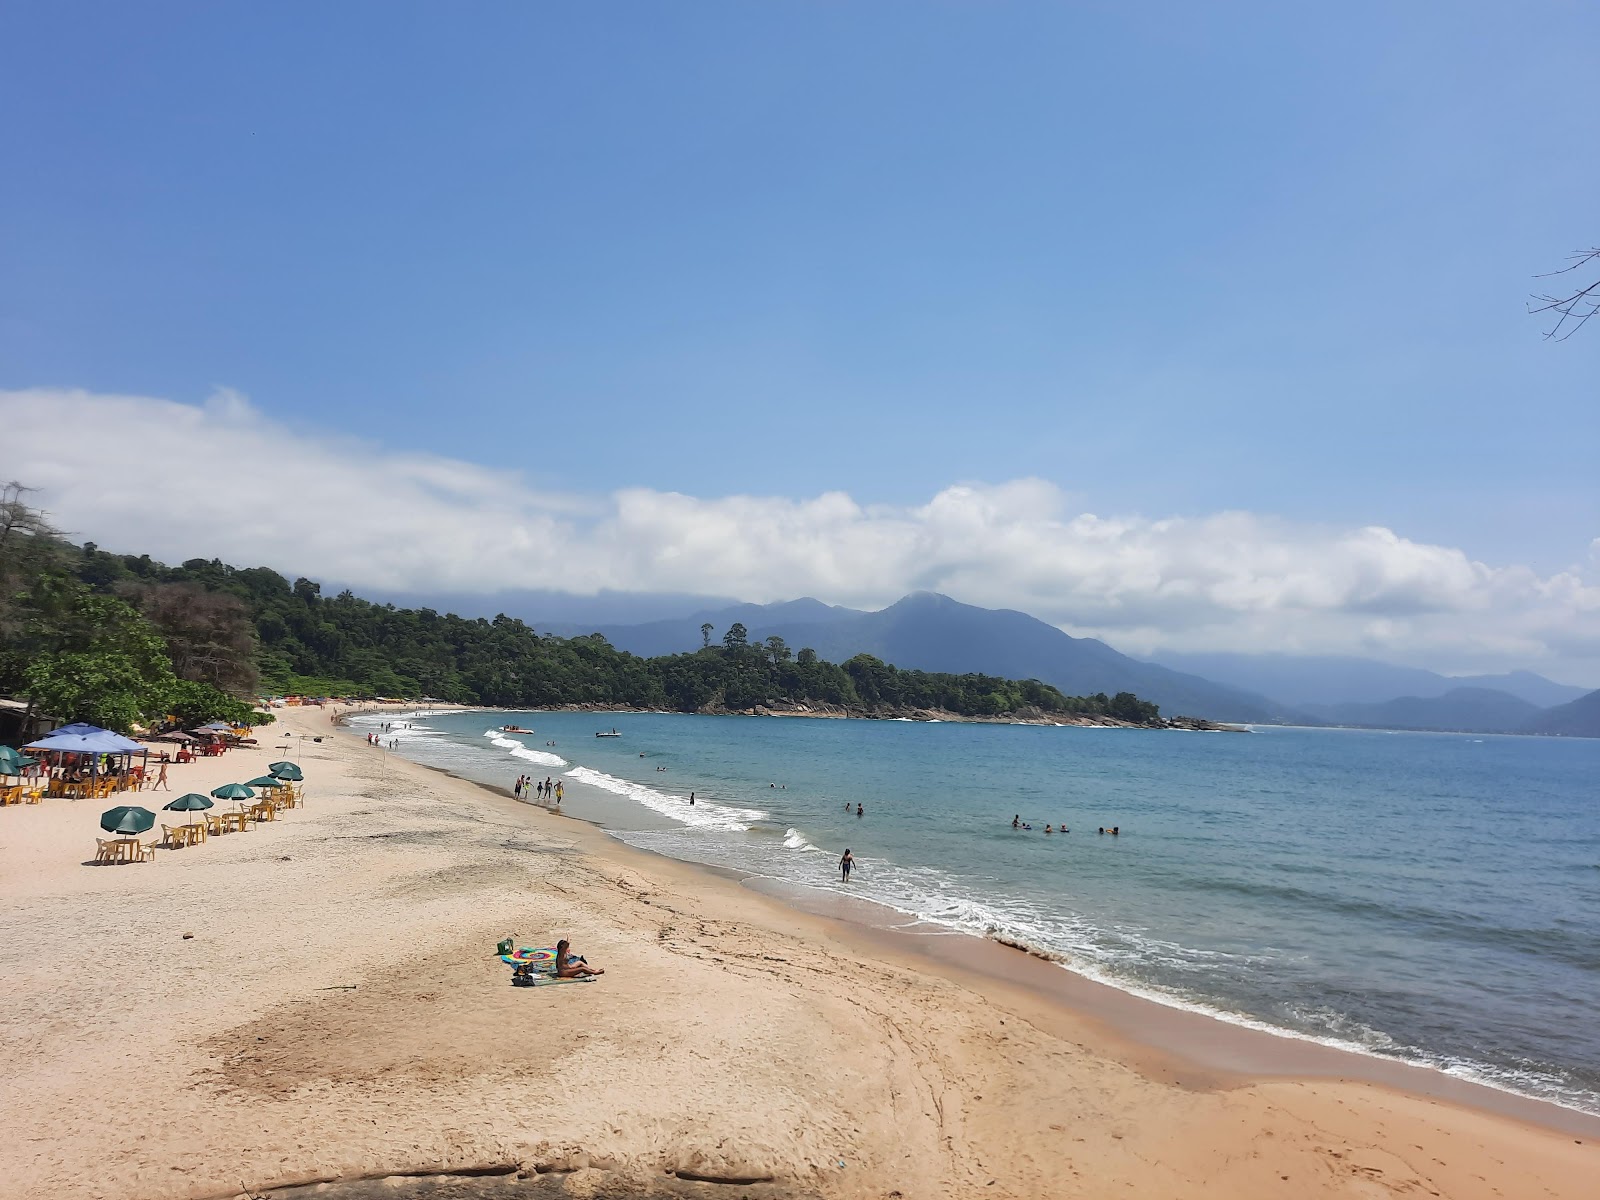 Foto af Praia da Cacandoca - populært sted blandt afslapningskendere